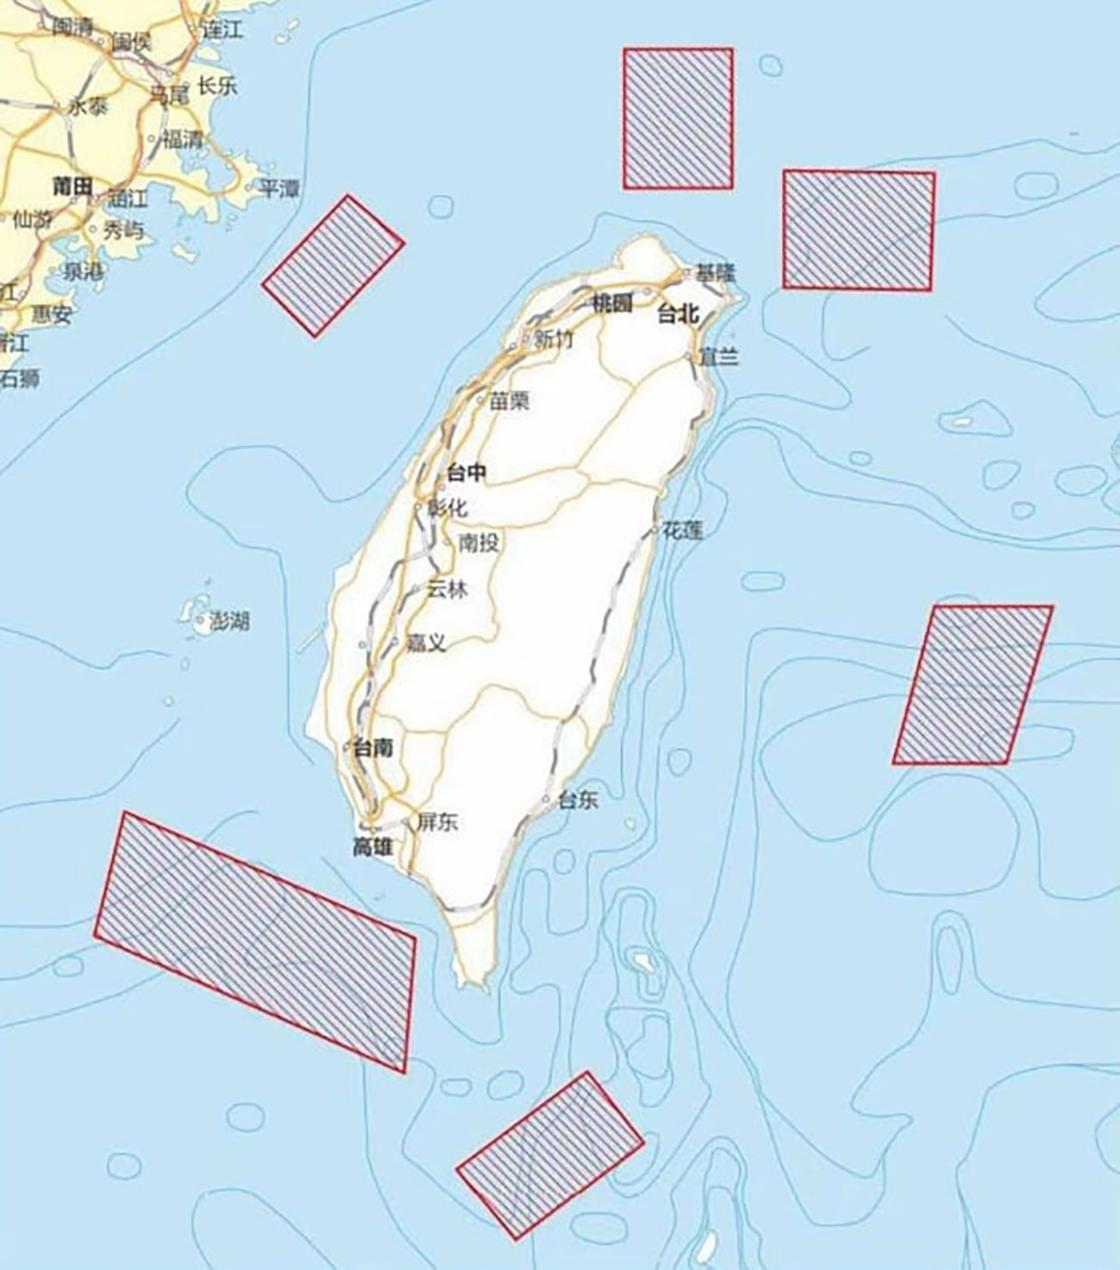 План проведения военных учений возле Тайваня со стороны Китая